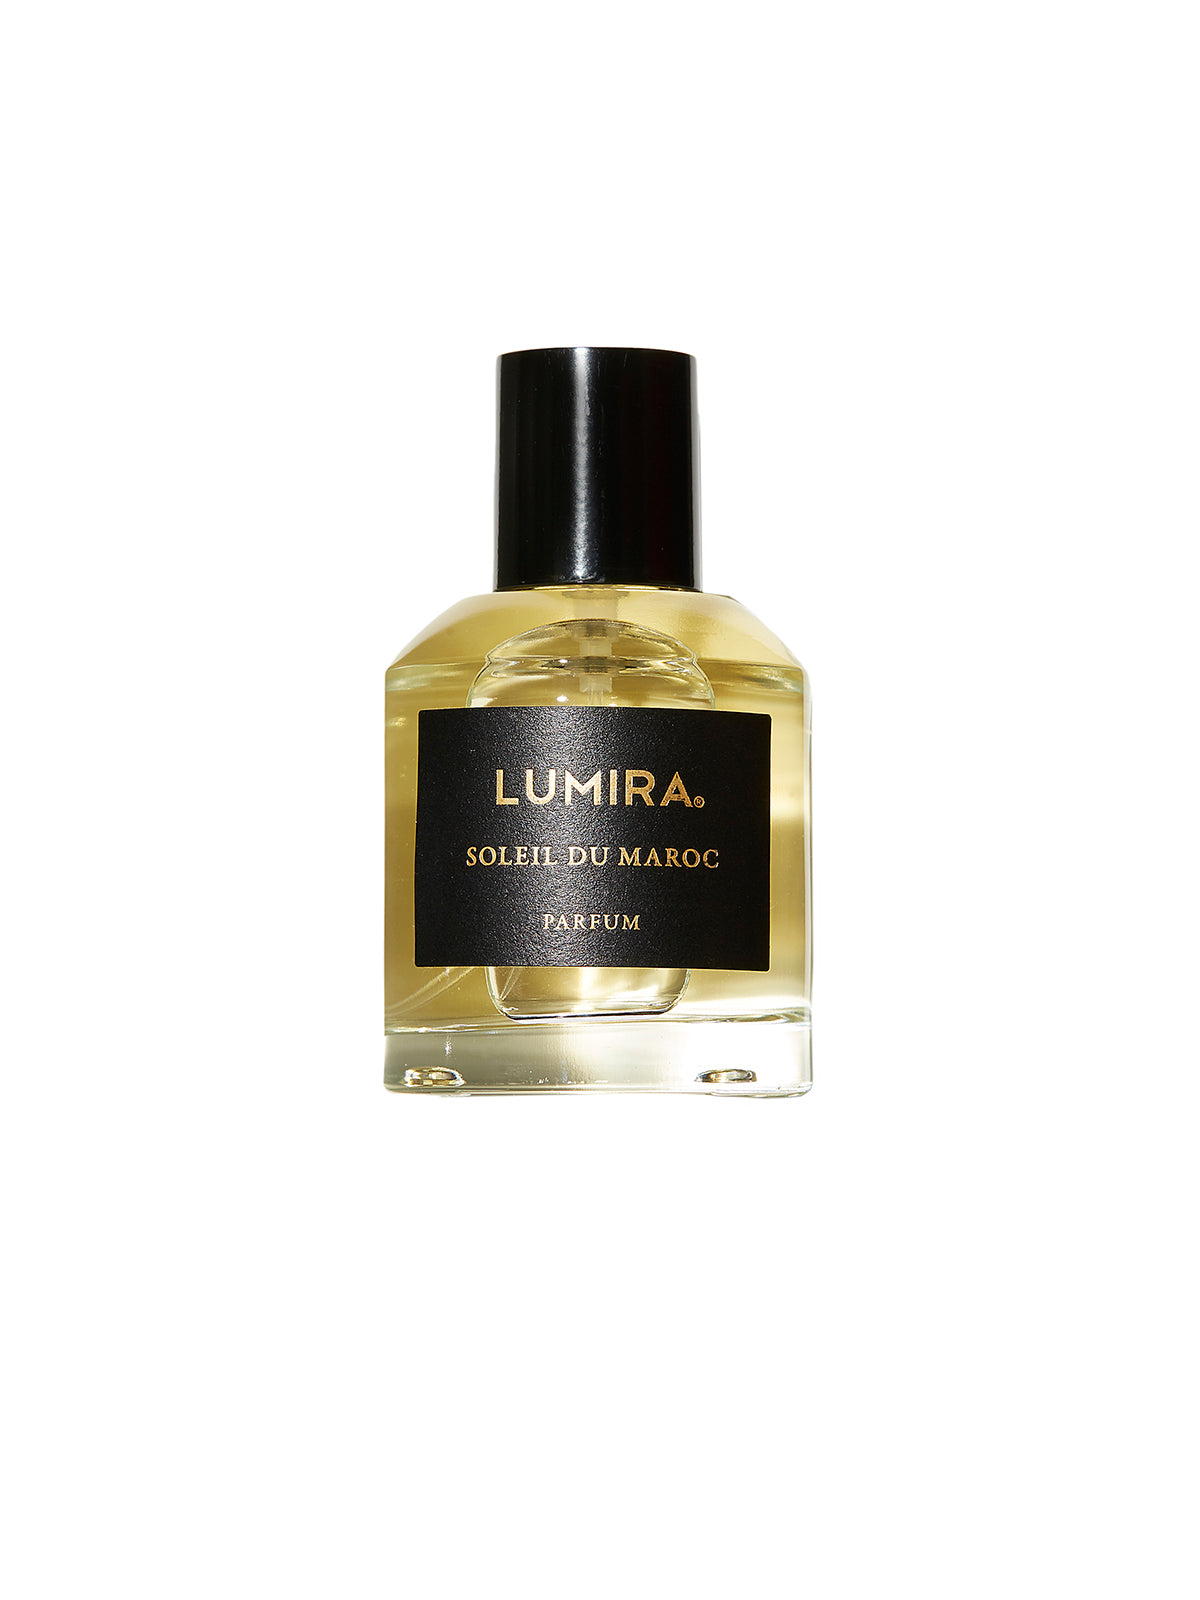 Lumira - Soleil du Maroc Eau de Parfum - Barefoot Gypsy Homewares